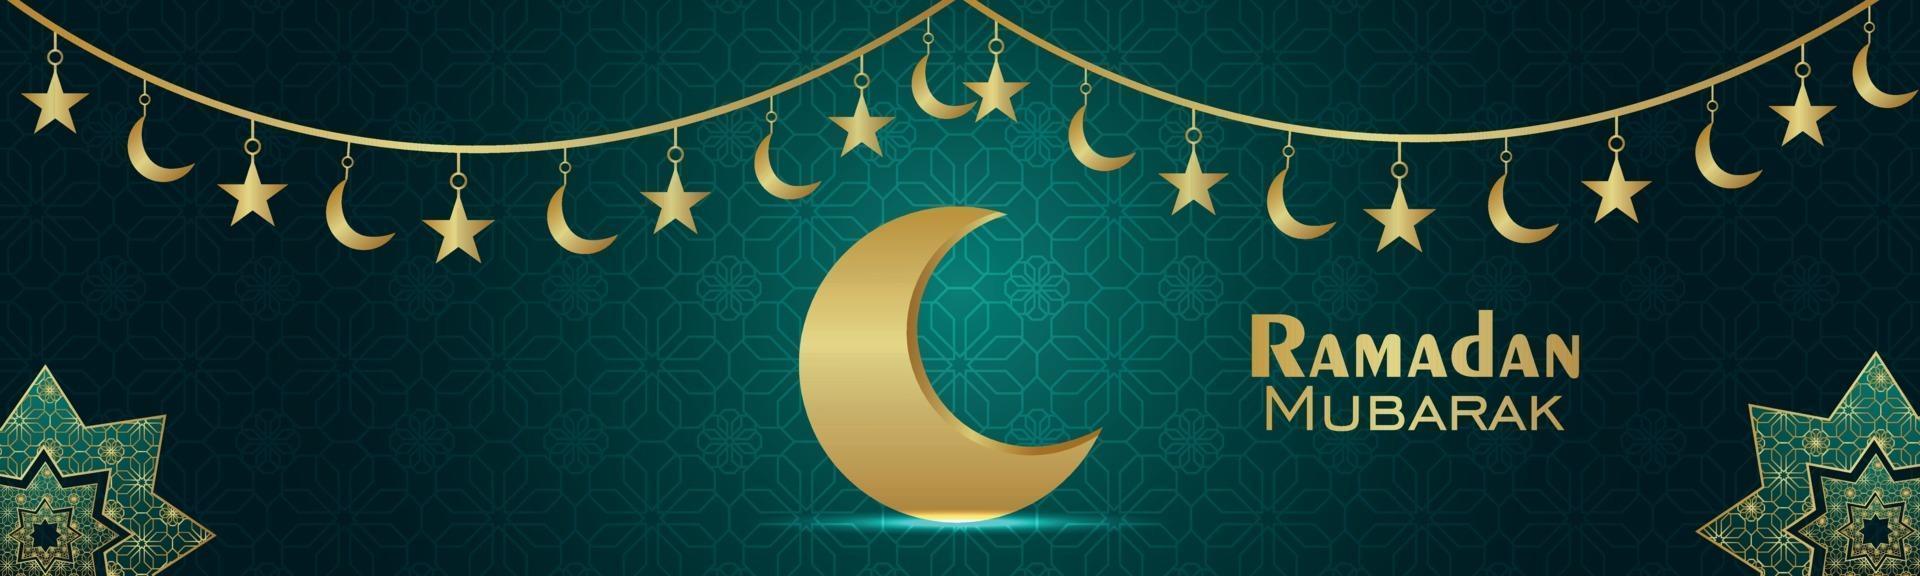 ramadan kareem islamisk festivalbanner med arabisk lykta och mönsterbakgrund vektor